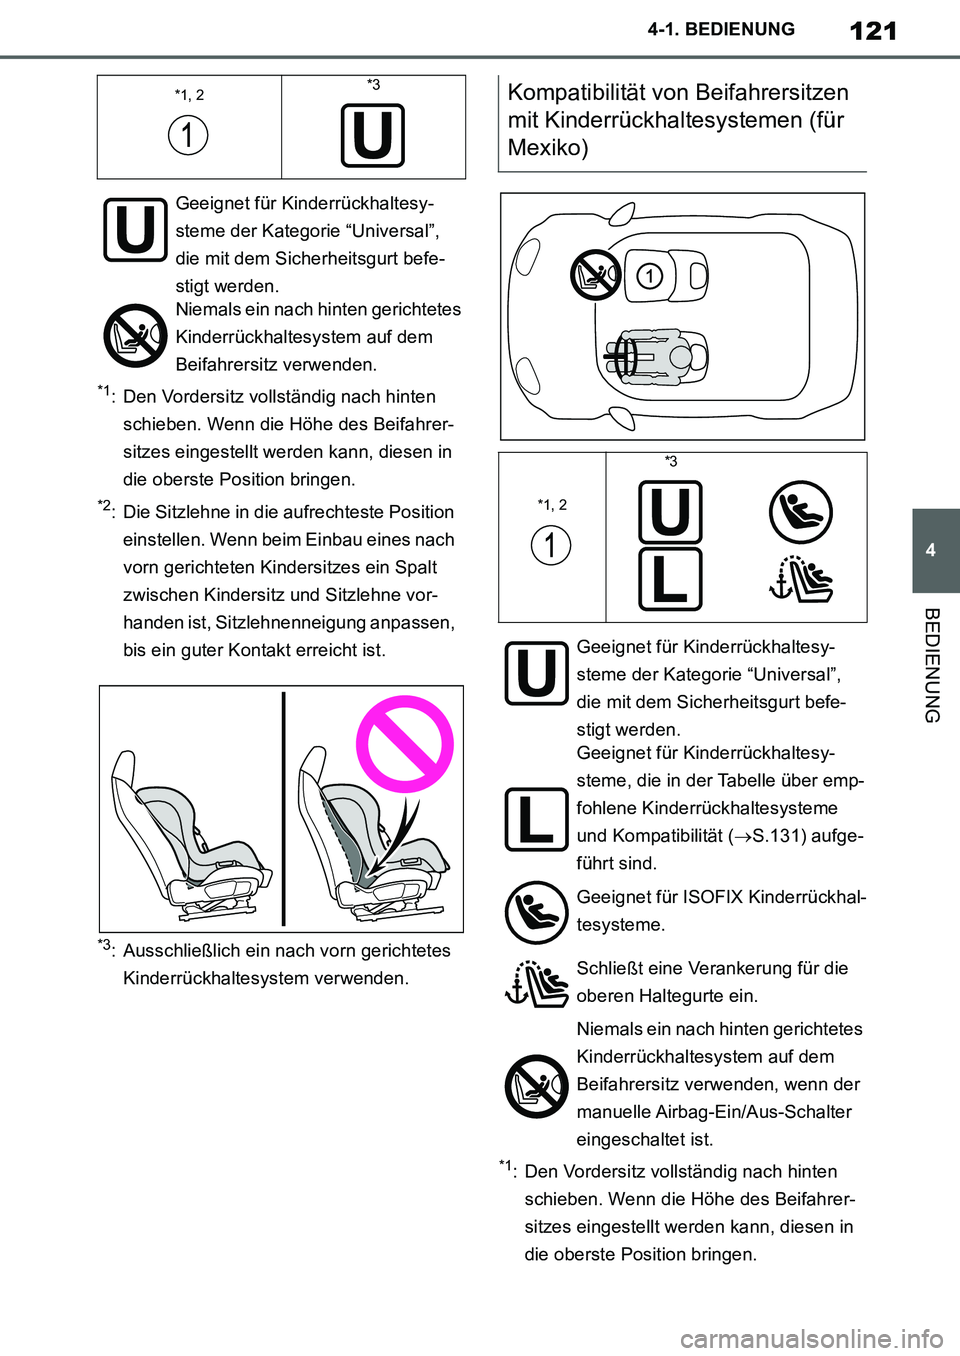 TOYOTA SUPRA 2020  Betriebsanleitungen (in German) 121
4
Supra Owners Manual_EM
4-1. BEDIENUNG
BEDIENUNG
*1: Den Vordersitz vollständig nach hinten 
schieben. Wenn die Höhe des Beifahrer-
sitzes eingestellt werden kann, diesen in 
die oberste Posit